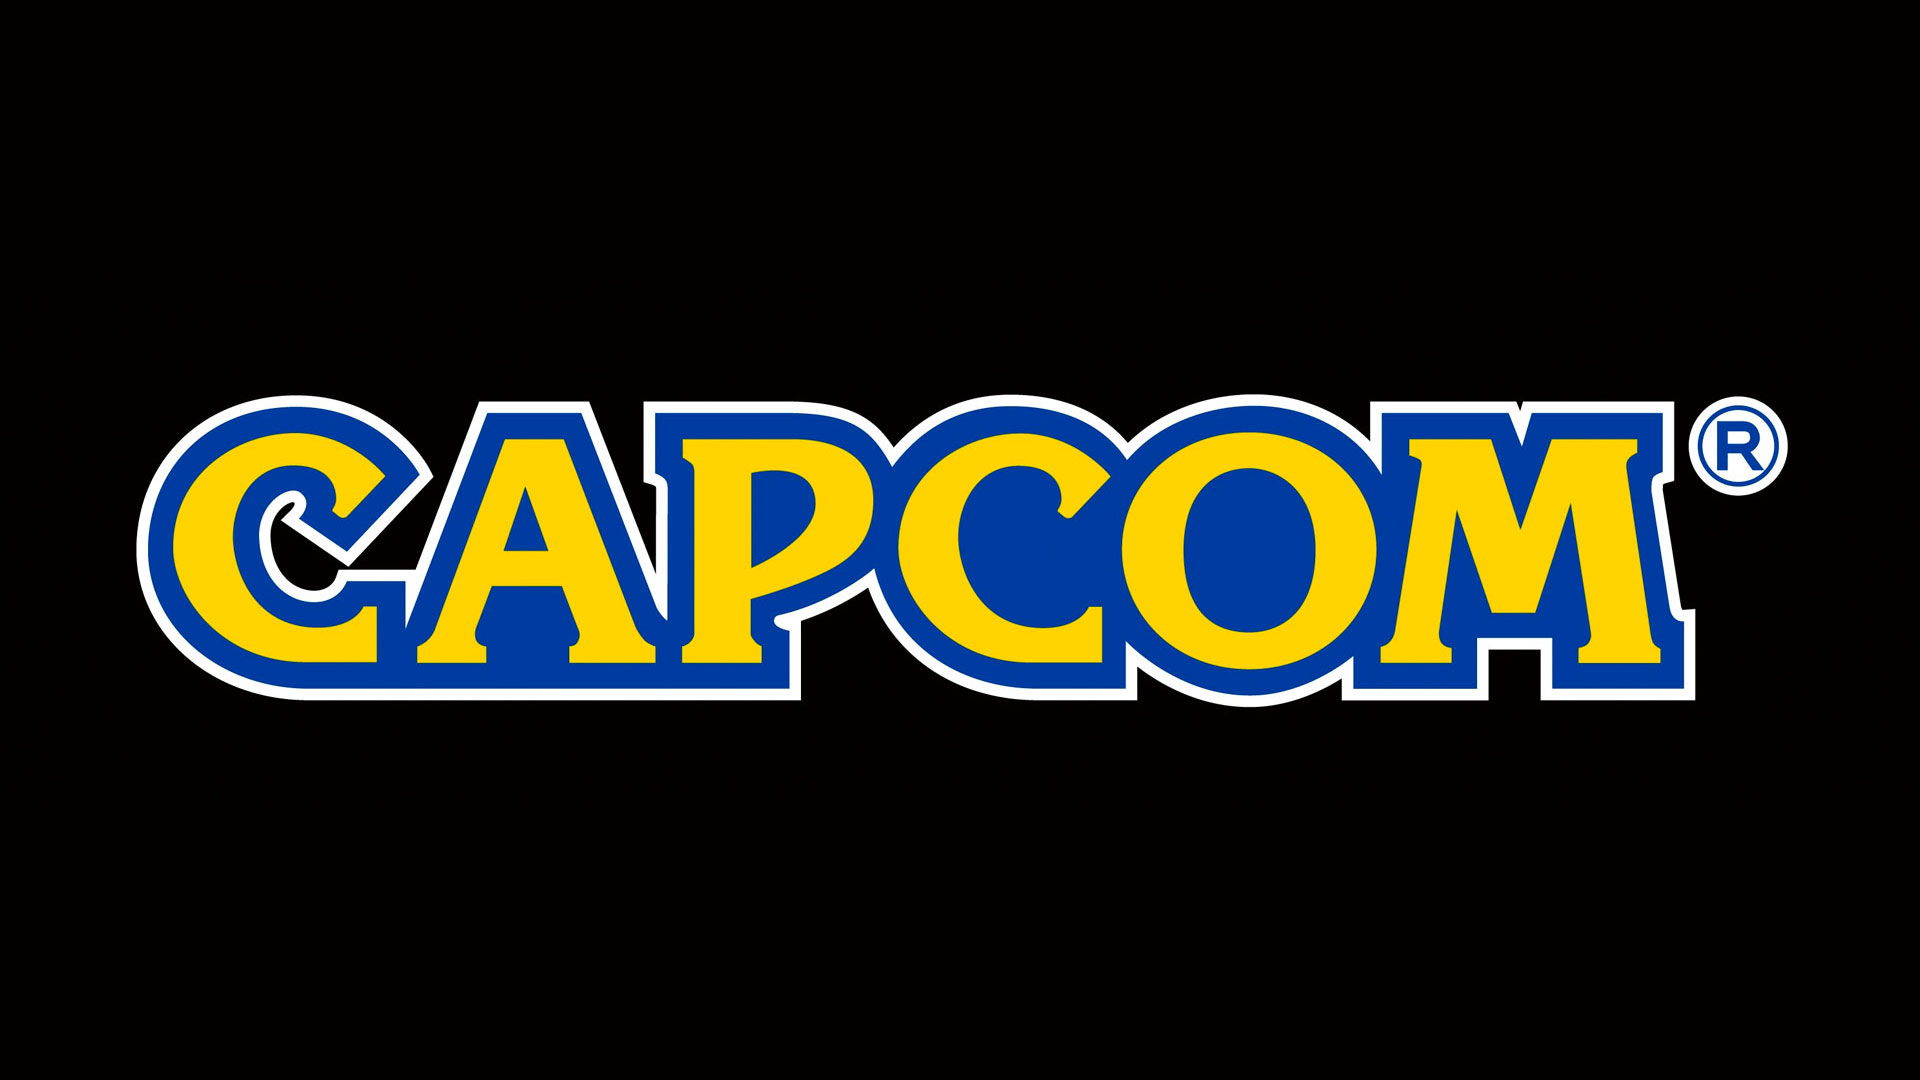 Capcom Financial Report